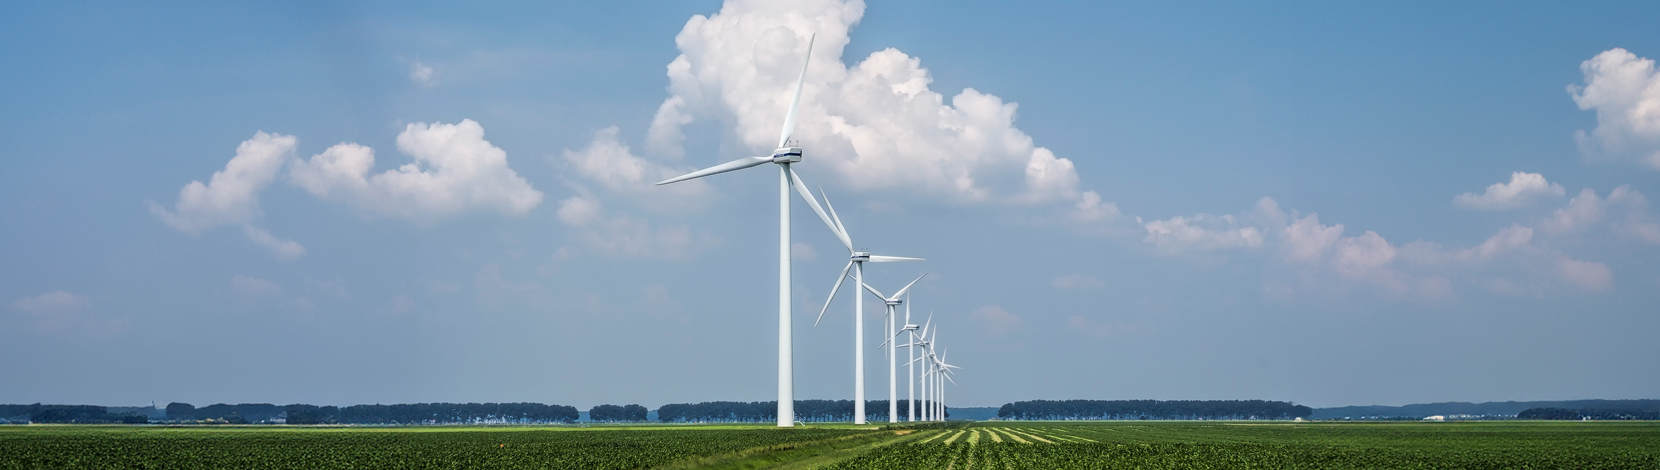 Der Mantelerlass und die Zukunft der erneuerbaren Energien – Electrosuisse